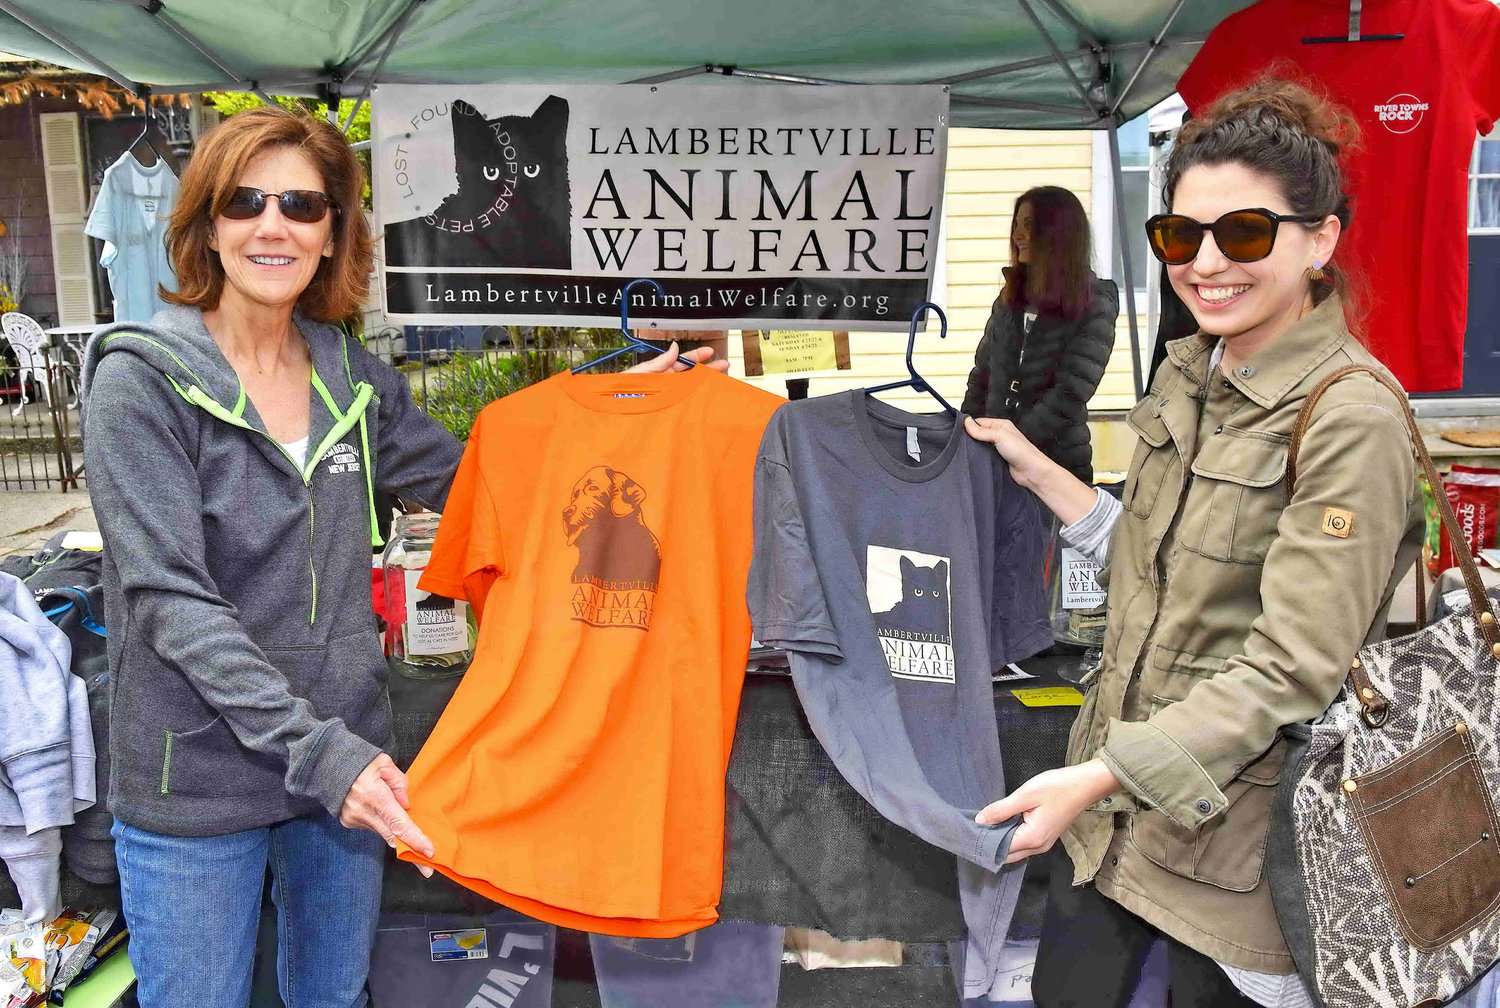 Lambertville Animal Welfare offered T-shirts as a fundraiser